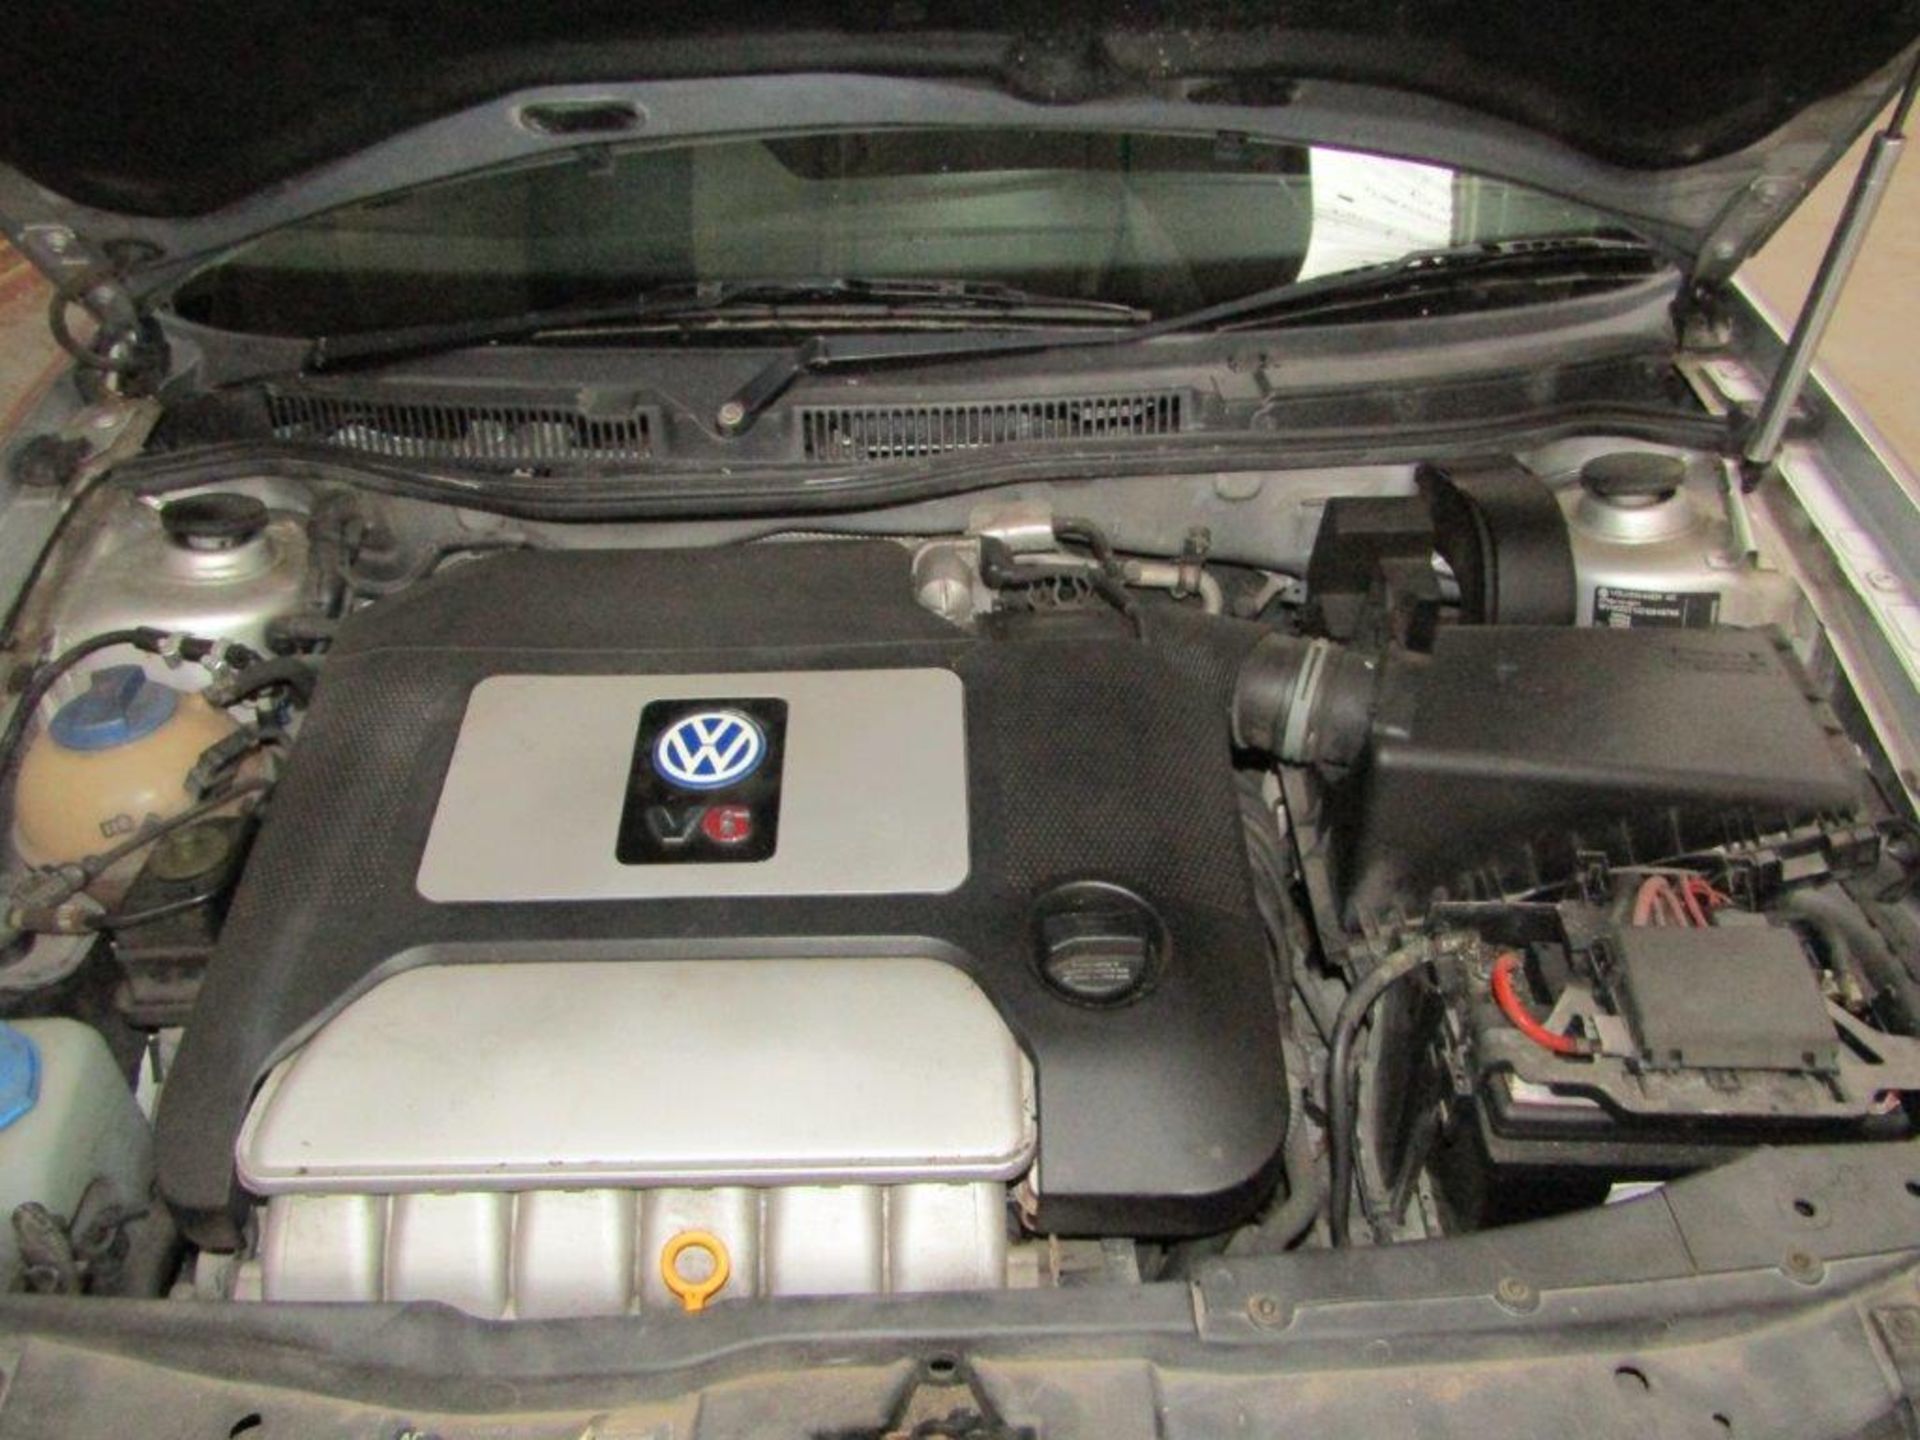 01 Y VW Golf V6 4Motion - Image 11 of 13